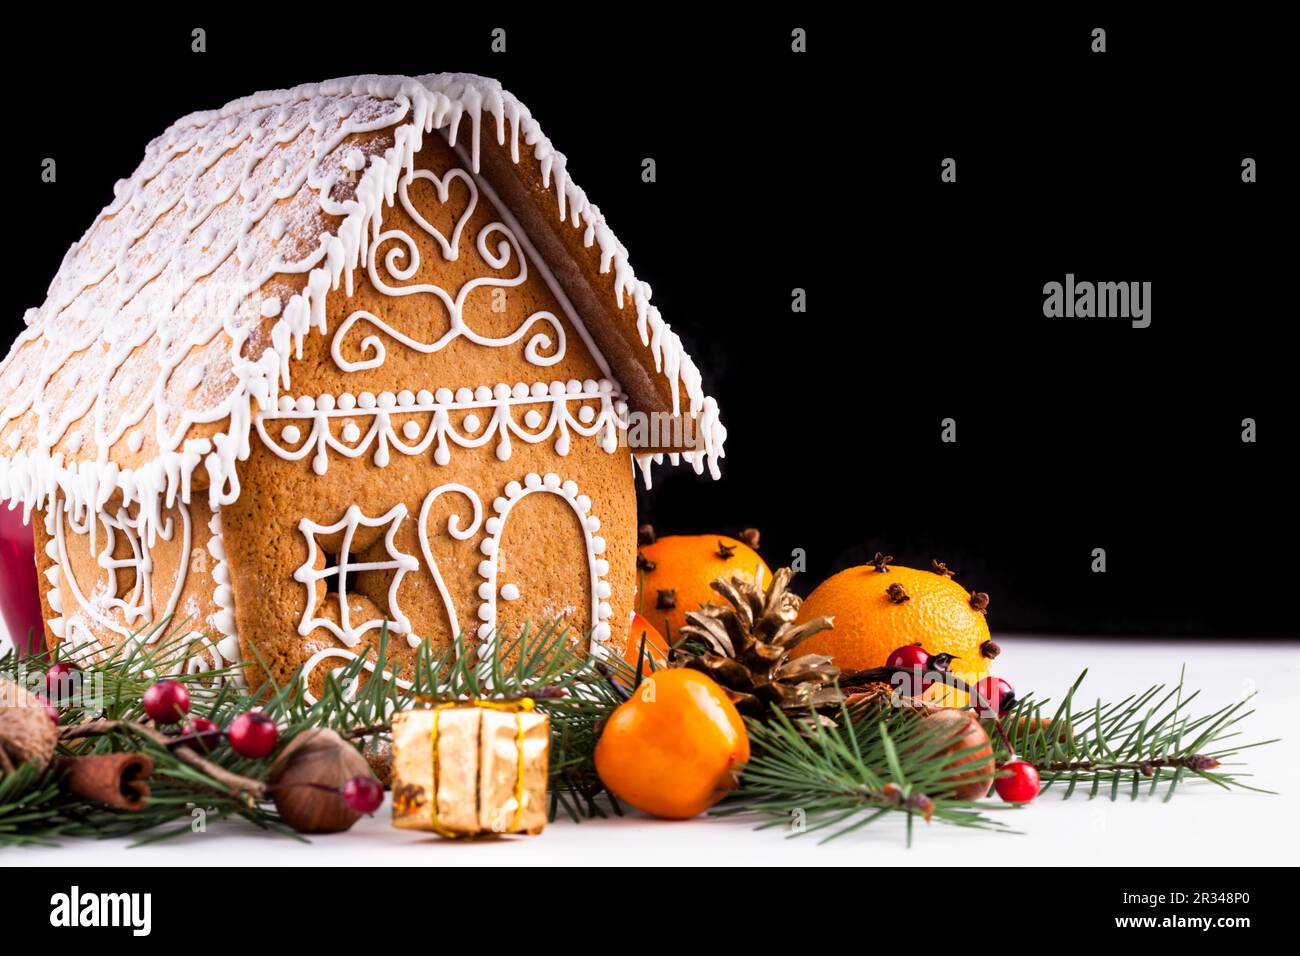 D'épices maison avec des décorations de Noël sur un backgrond blanc Banque D'Images